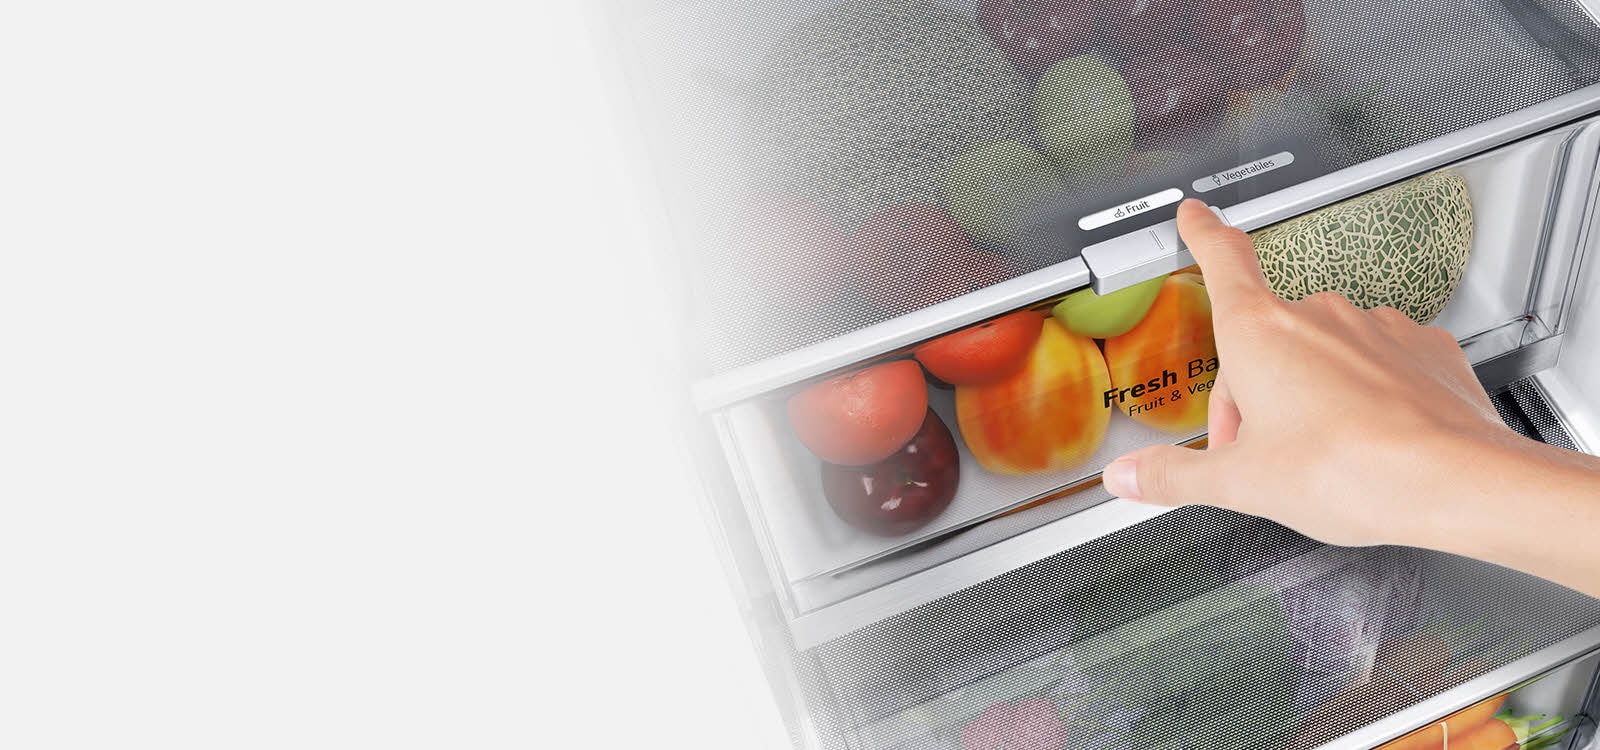 De onderste lades van de koelkast zijn gevuld met kleurrijke verse producten. Een inzetbeeld toont het instellen om de optimale vochtigheidsgraad te kiezen om producten vers te houden.